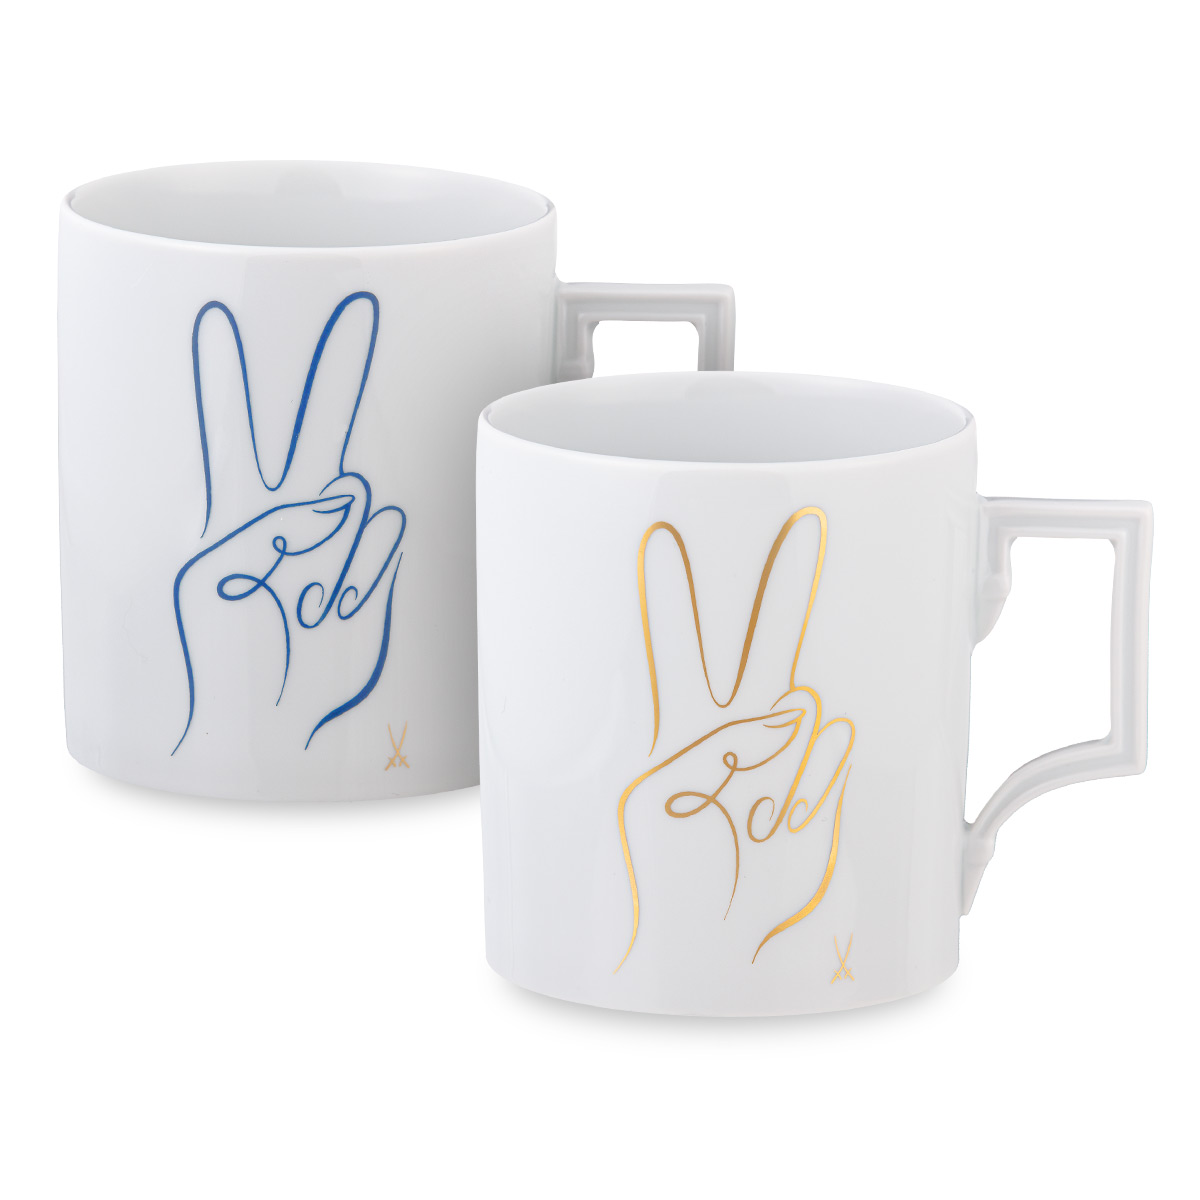 Die Meissen Mugs in der neuen Peace Collection: Peace Hand